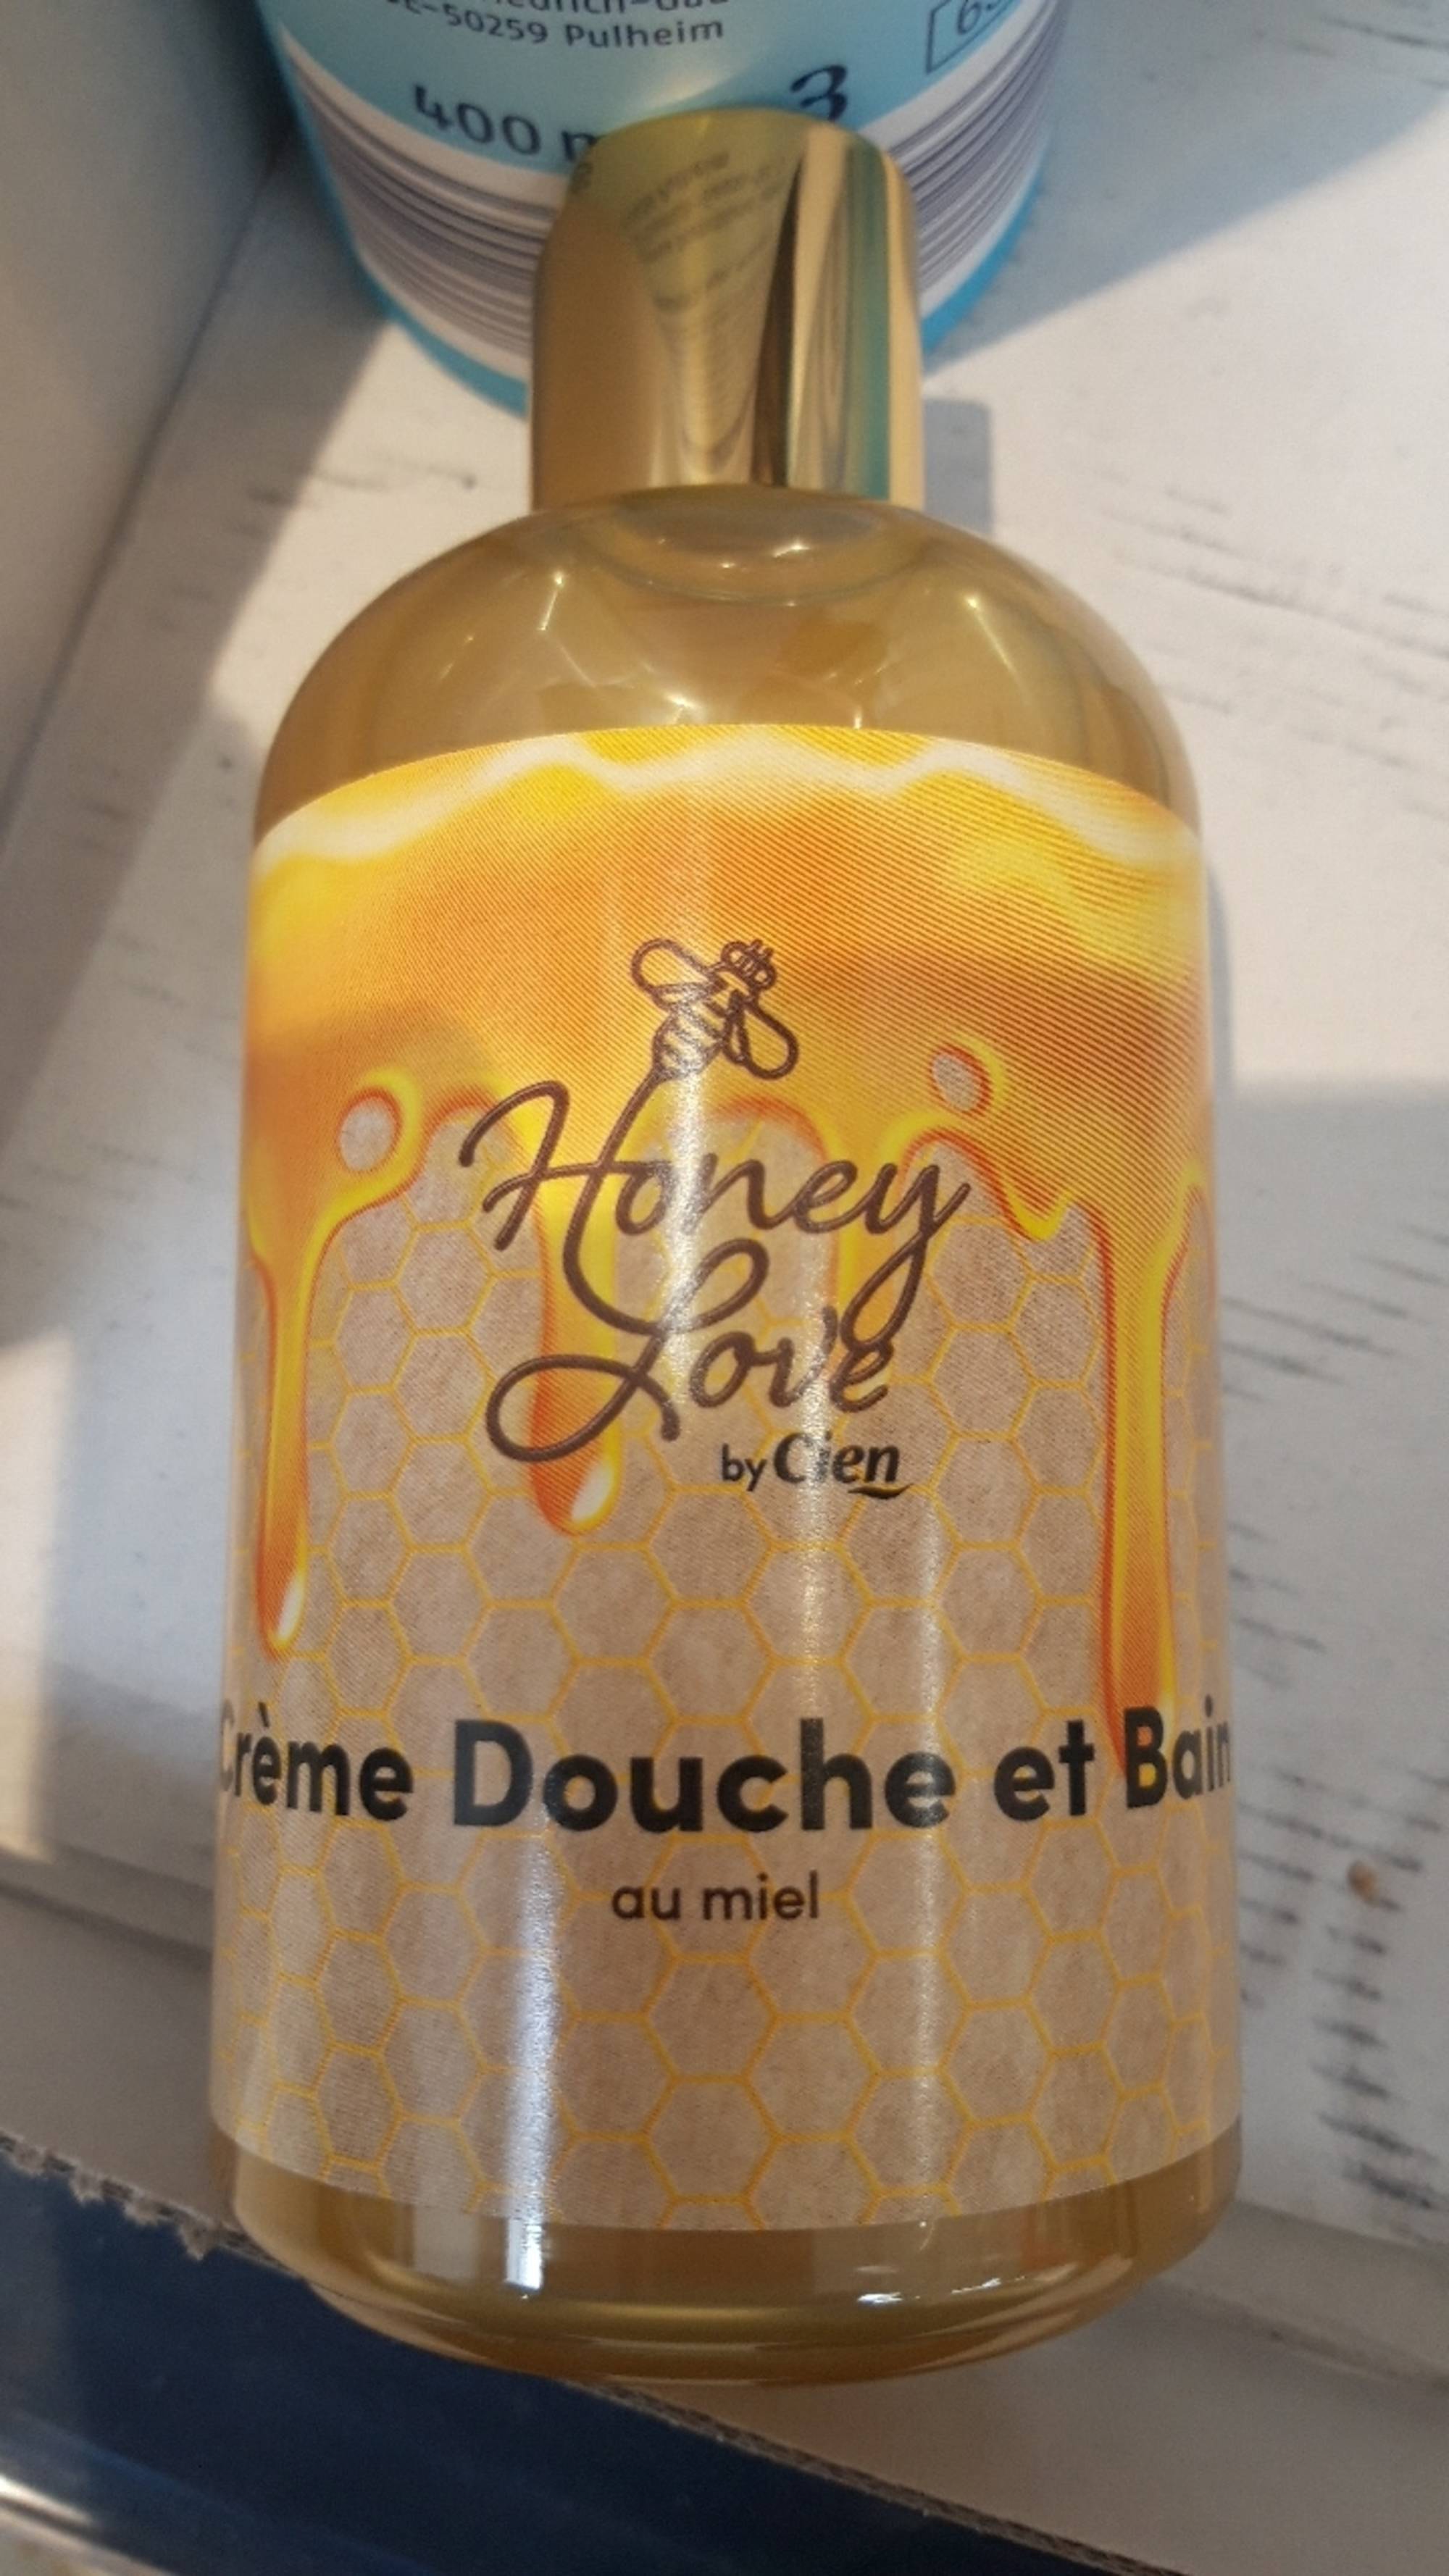 CIEN - Honey love - Crème douche et bain au miel